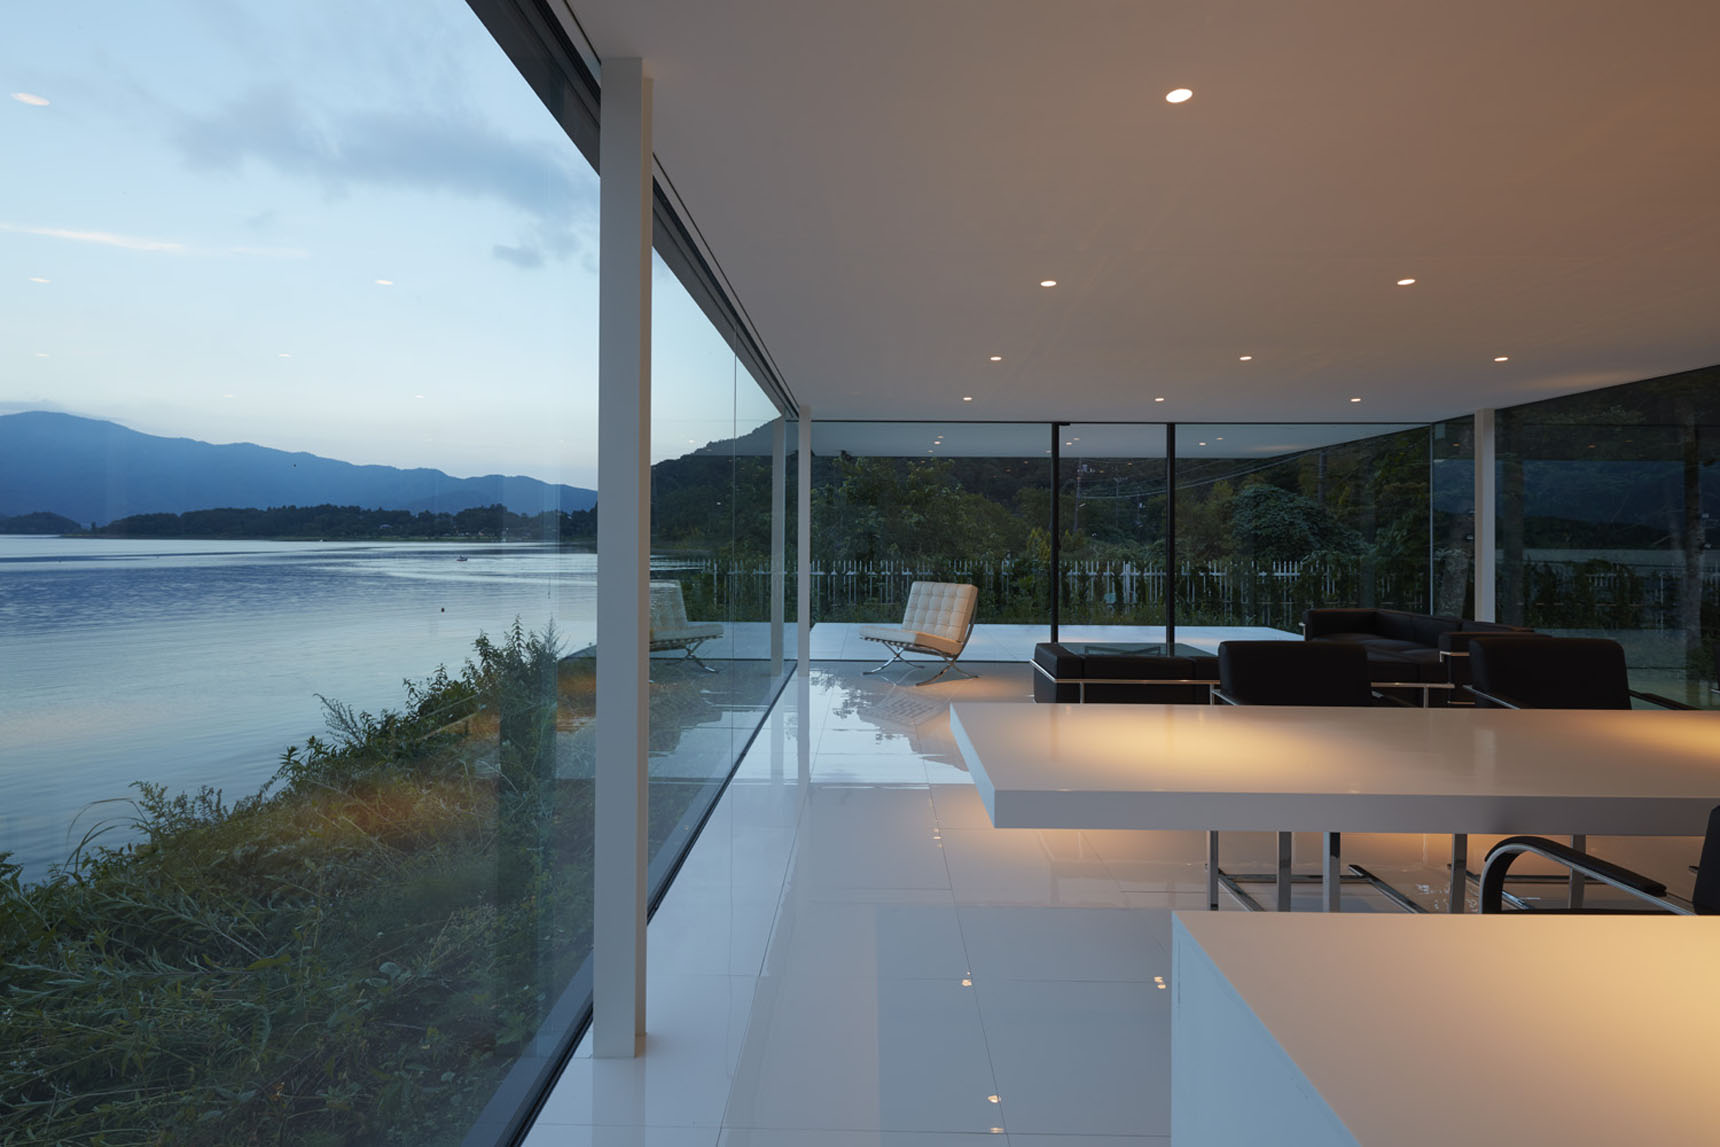 Lakeside House by Shinichi Ogawa & Associates